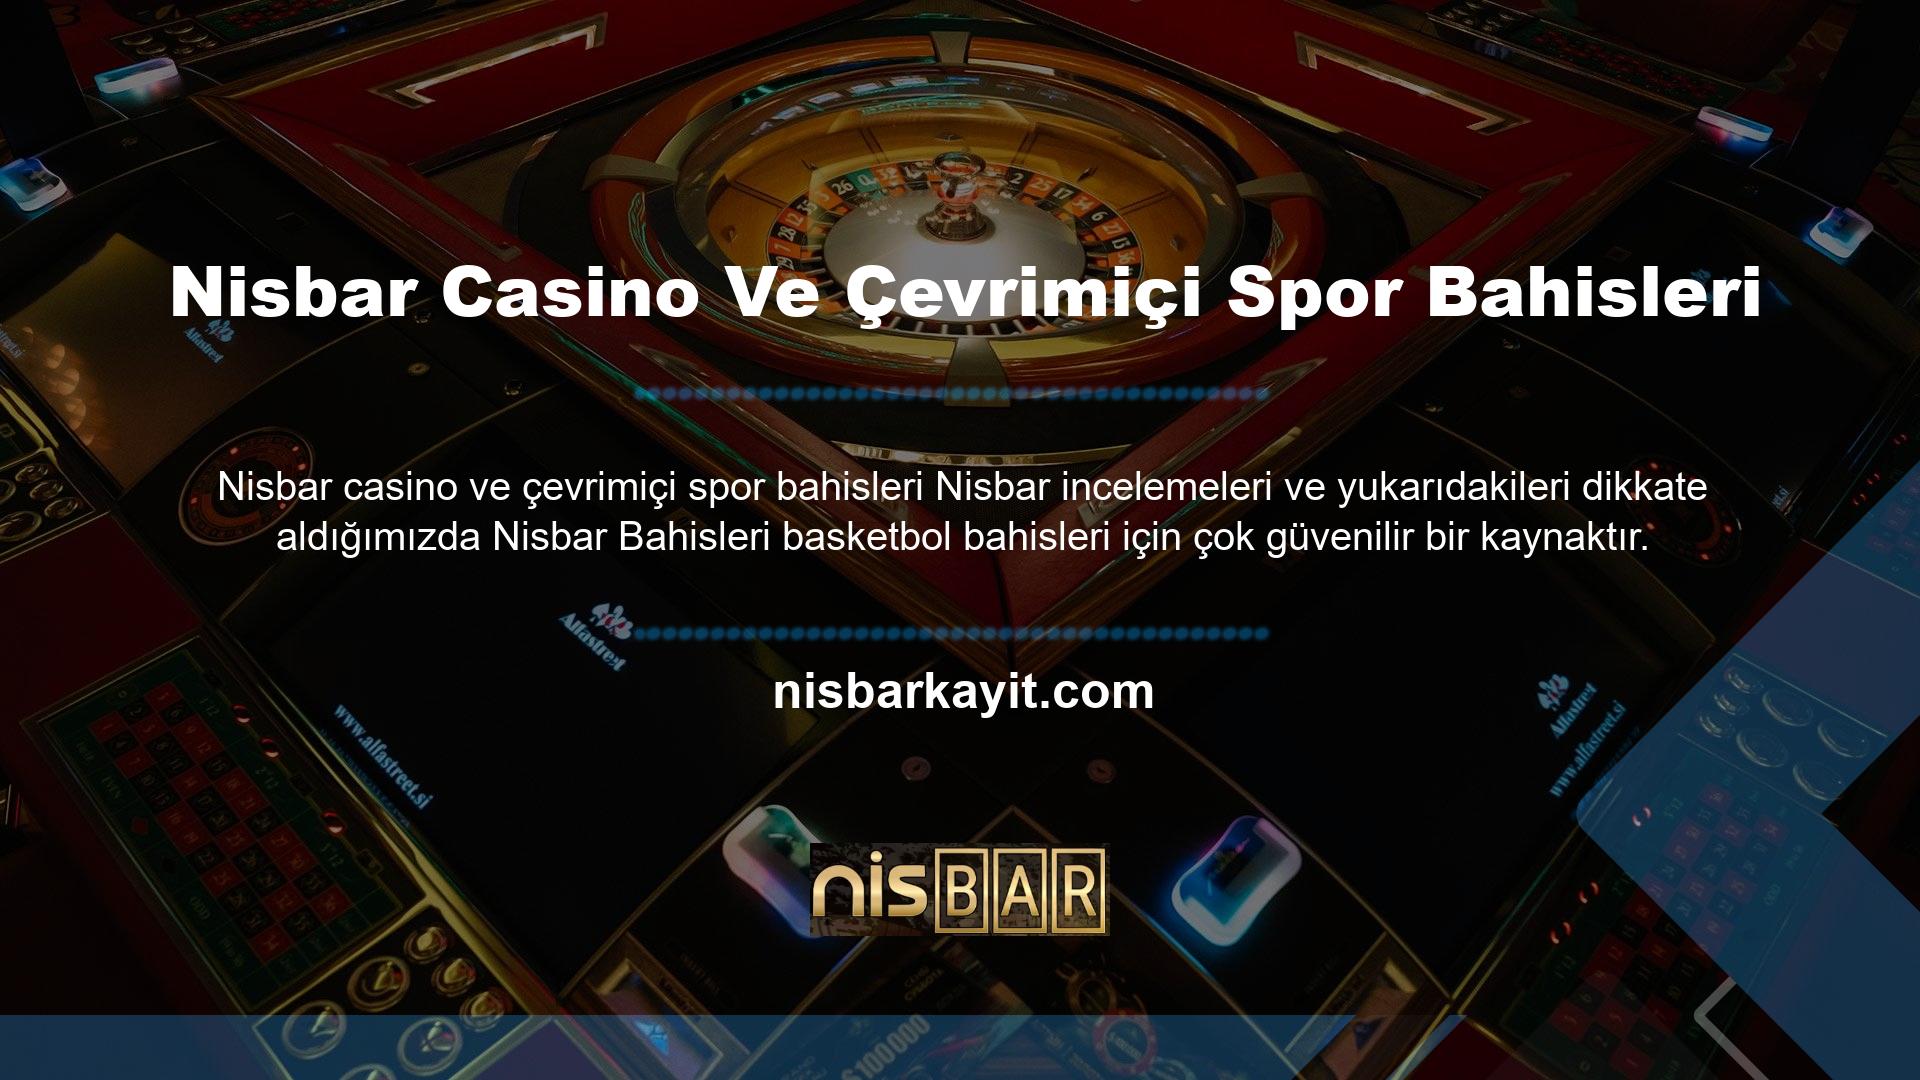 Nisbar casino ve spor bahisleri web sitesi, tüm casino tutkunlarının tercihi olup, her geçen gün artan kullanıcı sayısıyla genişlemeye devam etmektedir